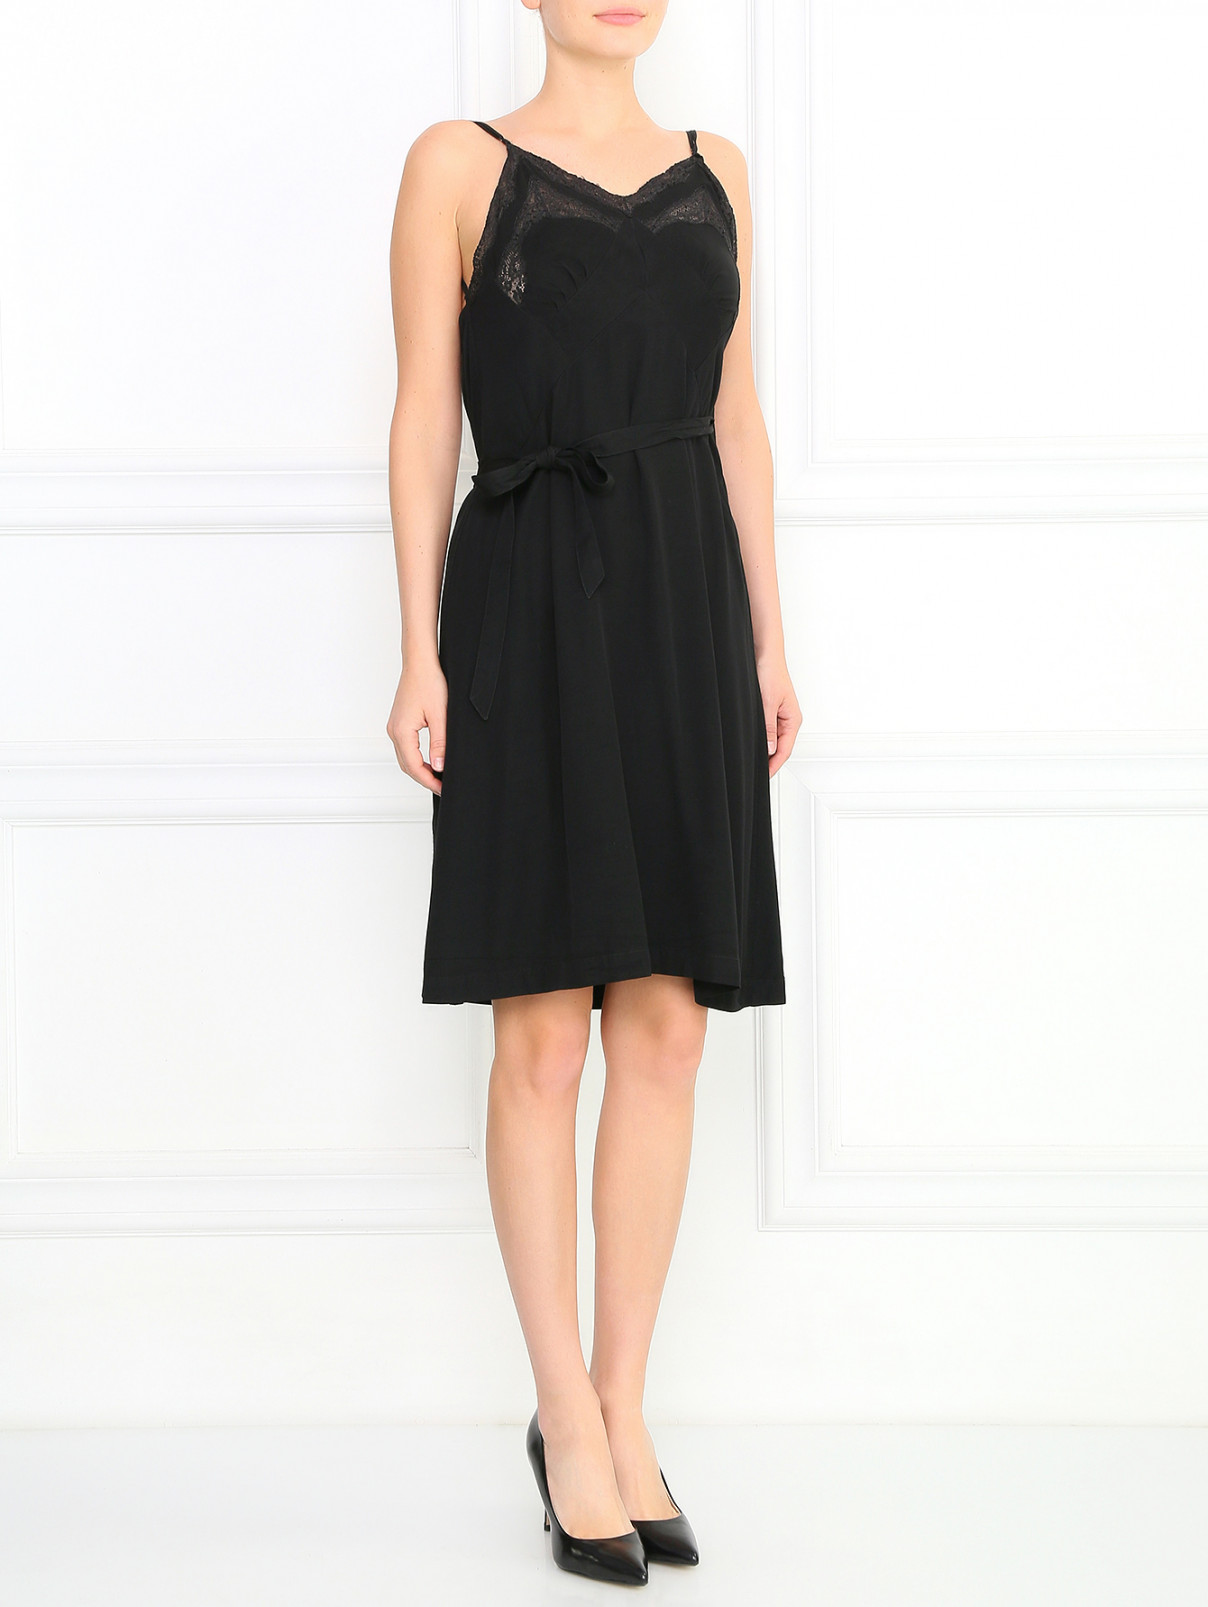 Платье-комбинация с запахом  декорированное кружевом Jean Paul Gaultier  –  Модель Общий вид  – Цвет:  Черный